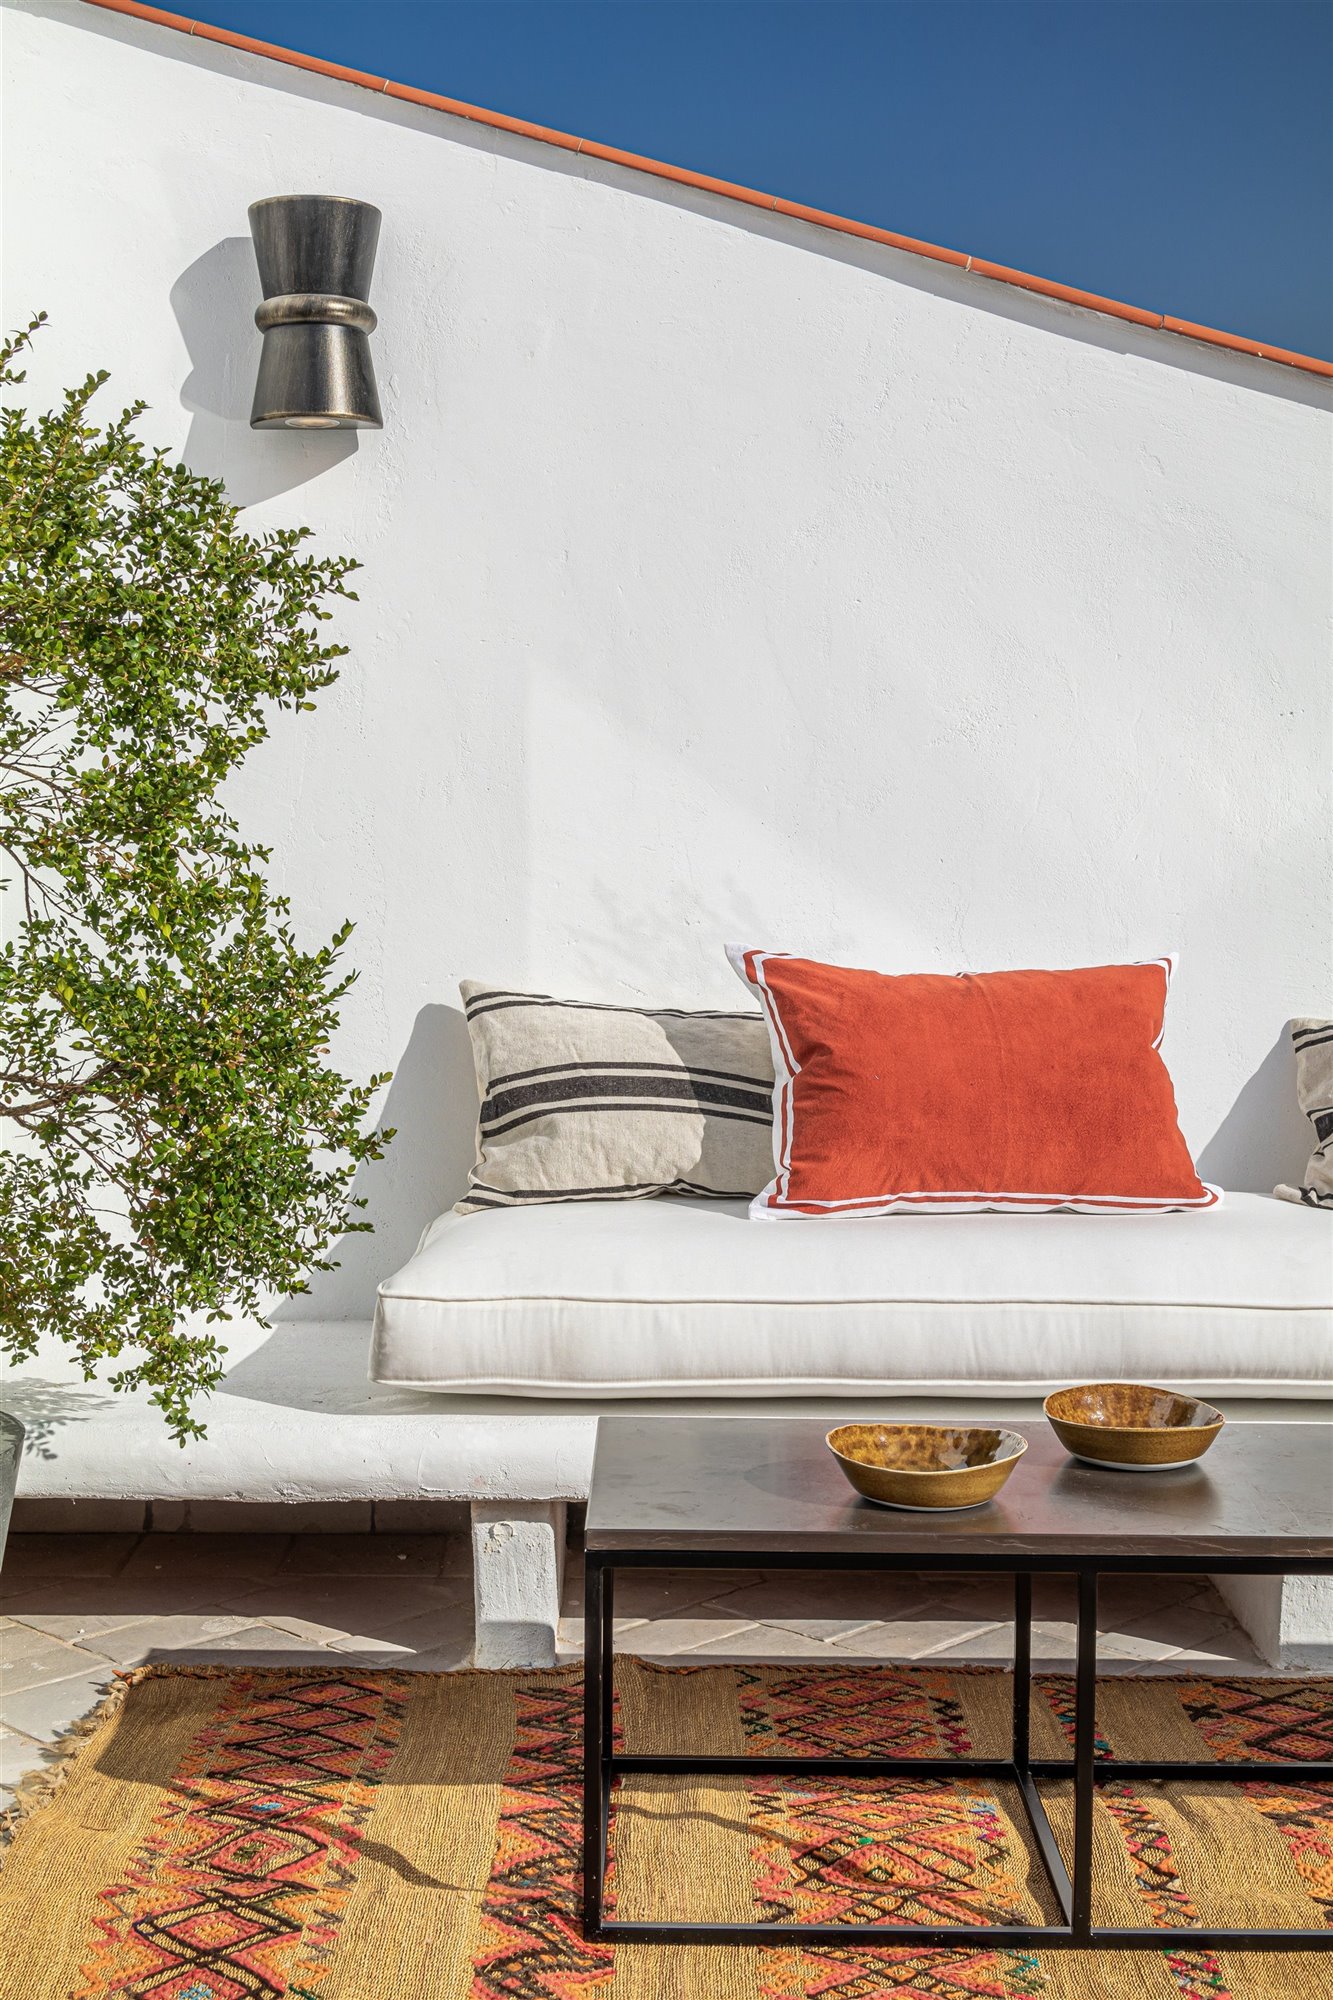 Atico en Madrid totalmente reformado con decoracion moderna terraza con sofa de obra